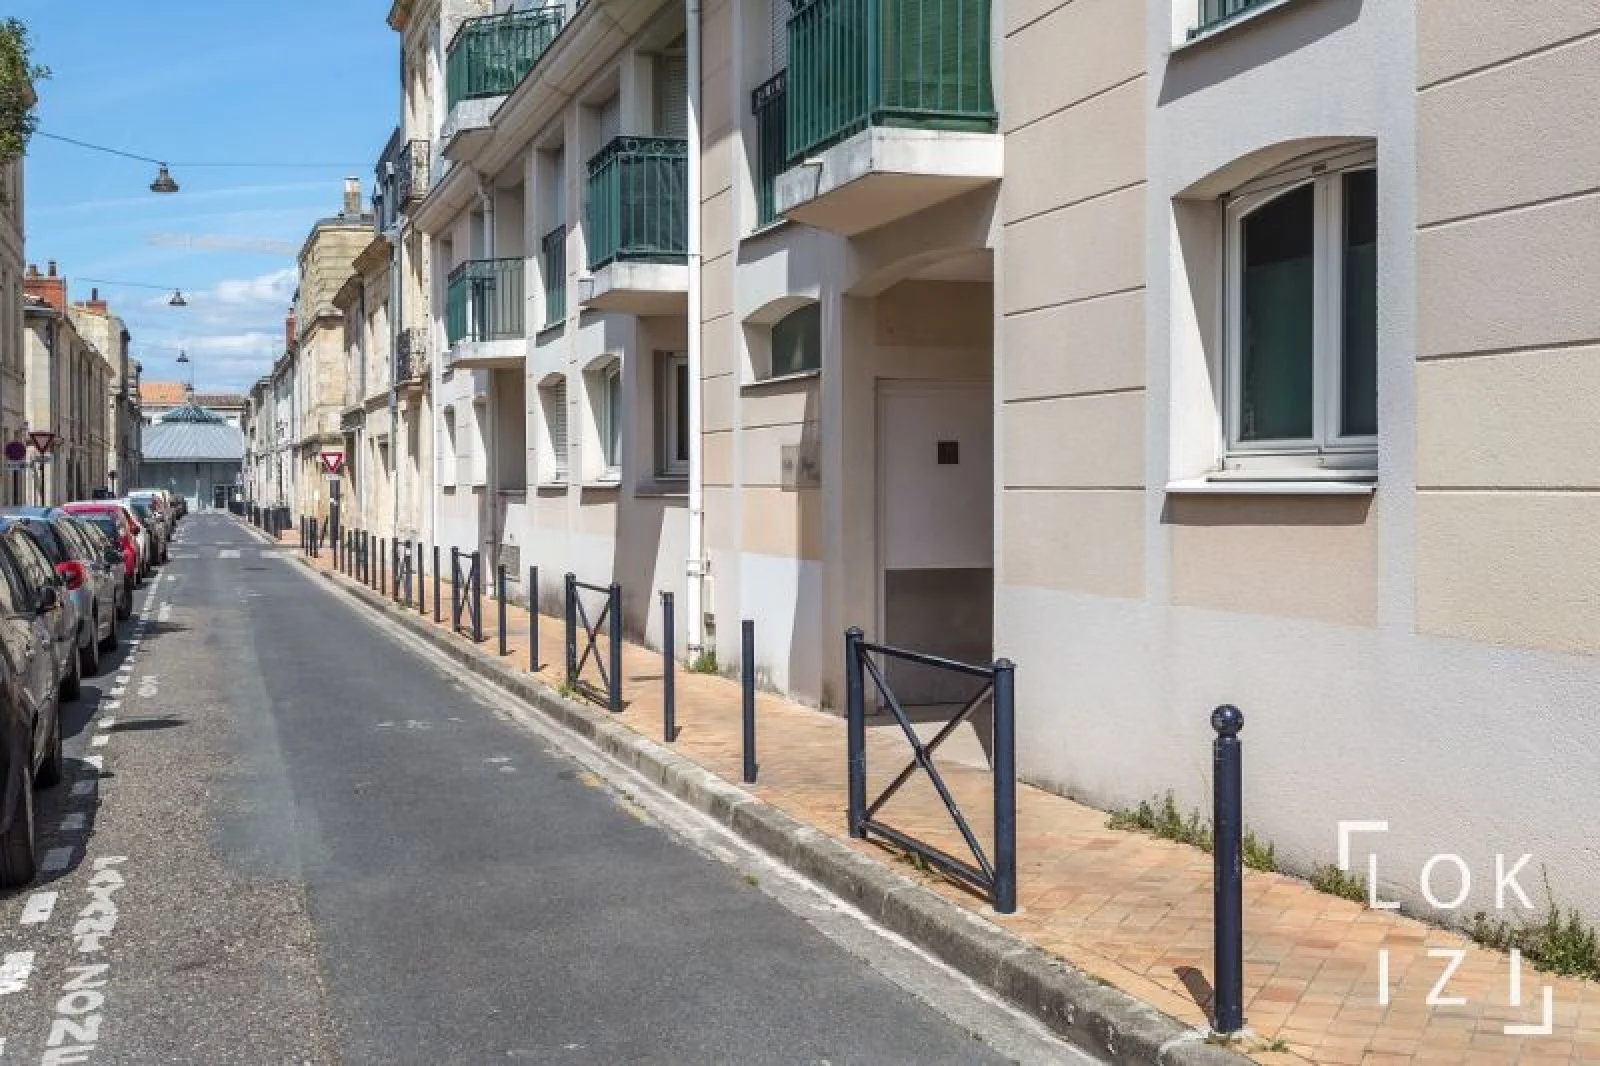 Location appartement 2 pièces meublé de 53m² parking (Bordeaux)